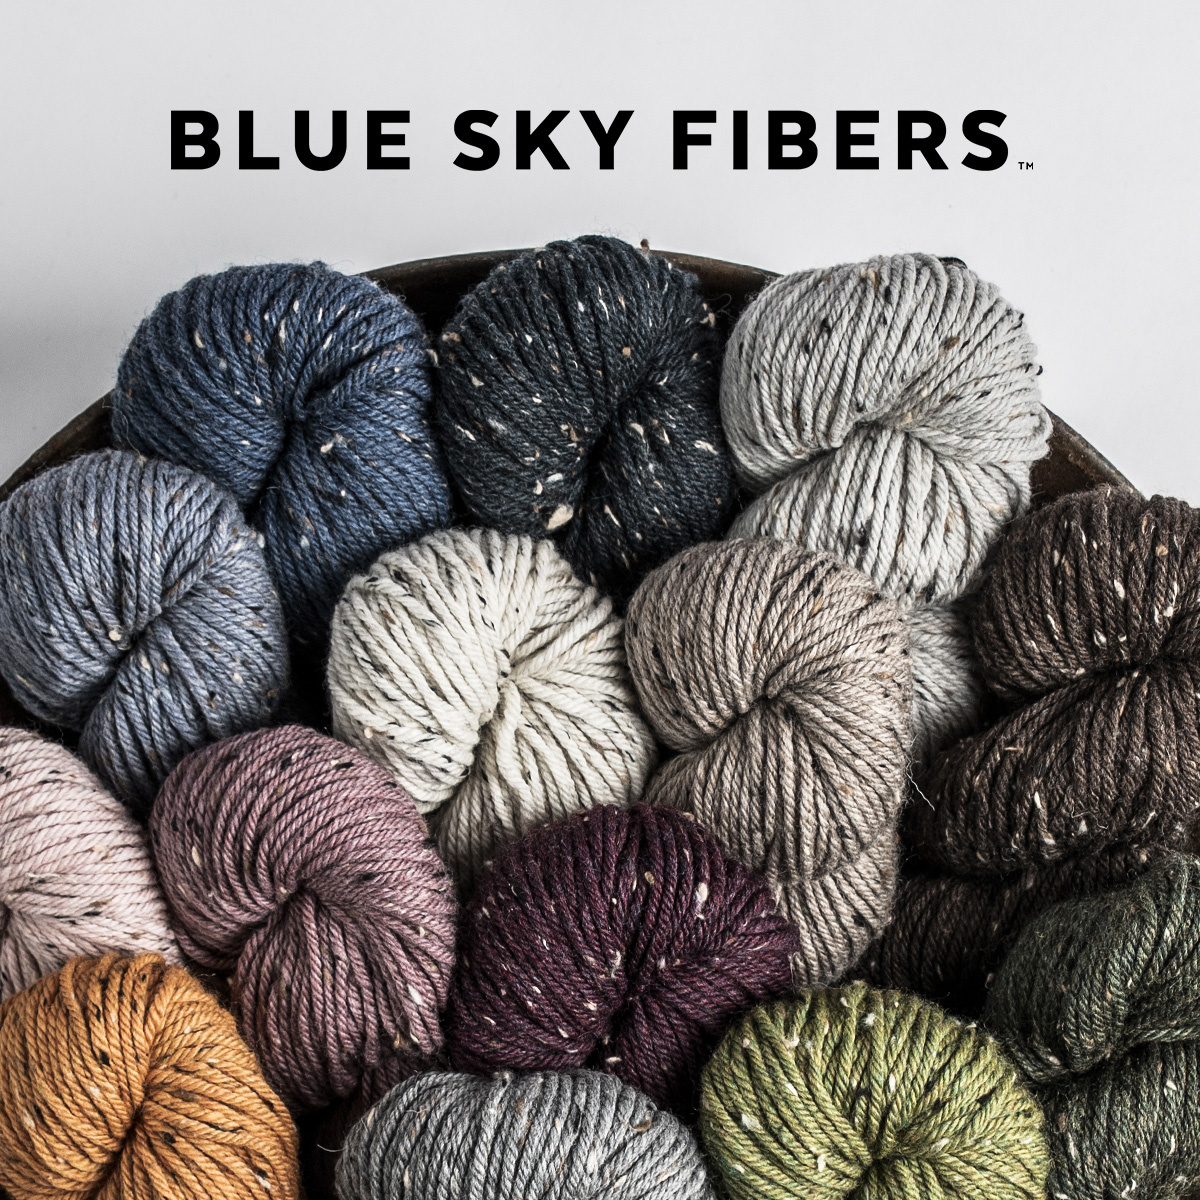 New Blue Sky Fibers Woolstok Aran Tweed is here!